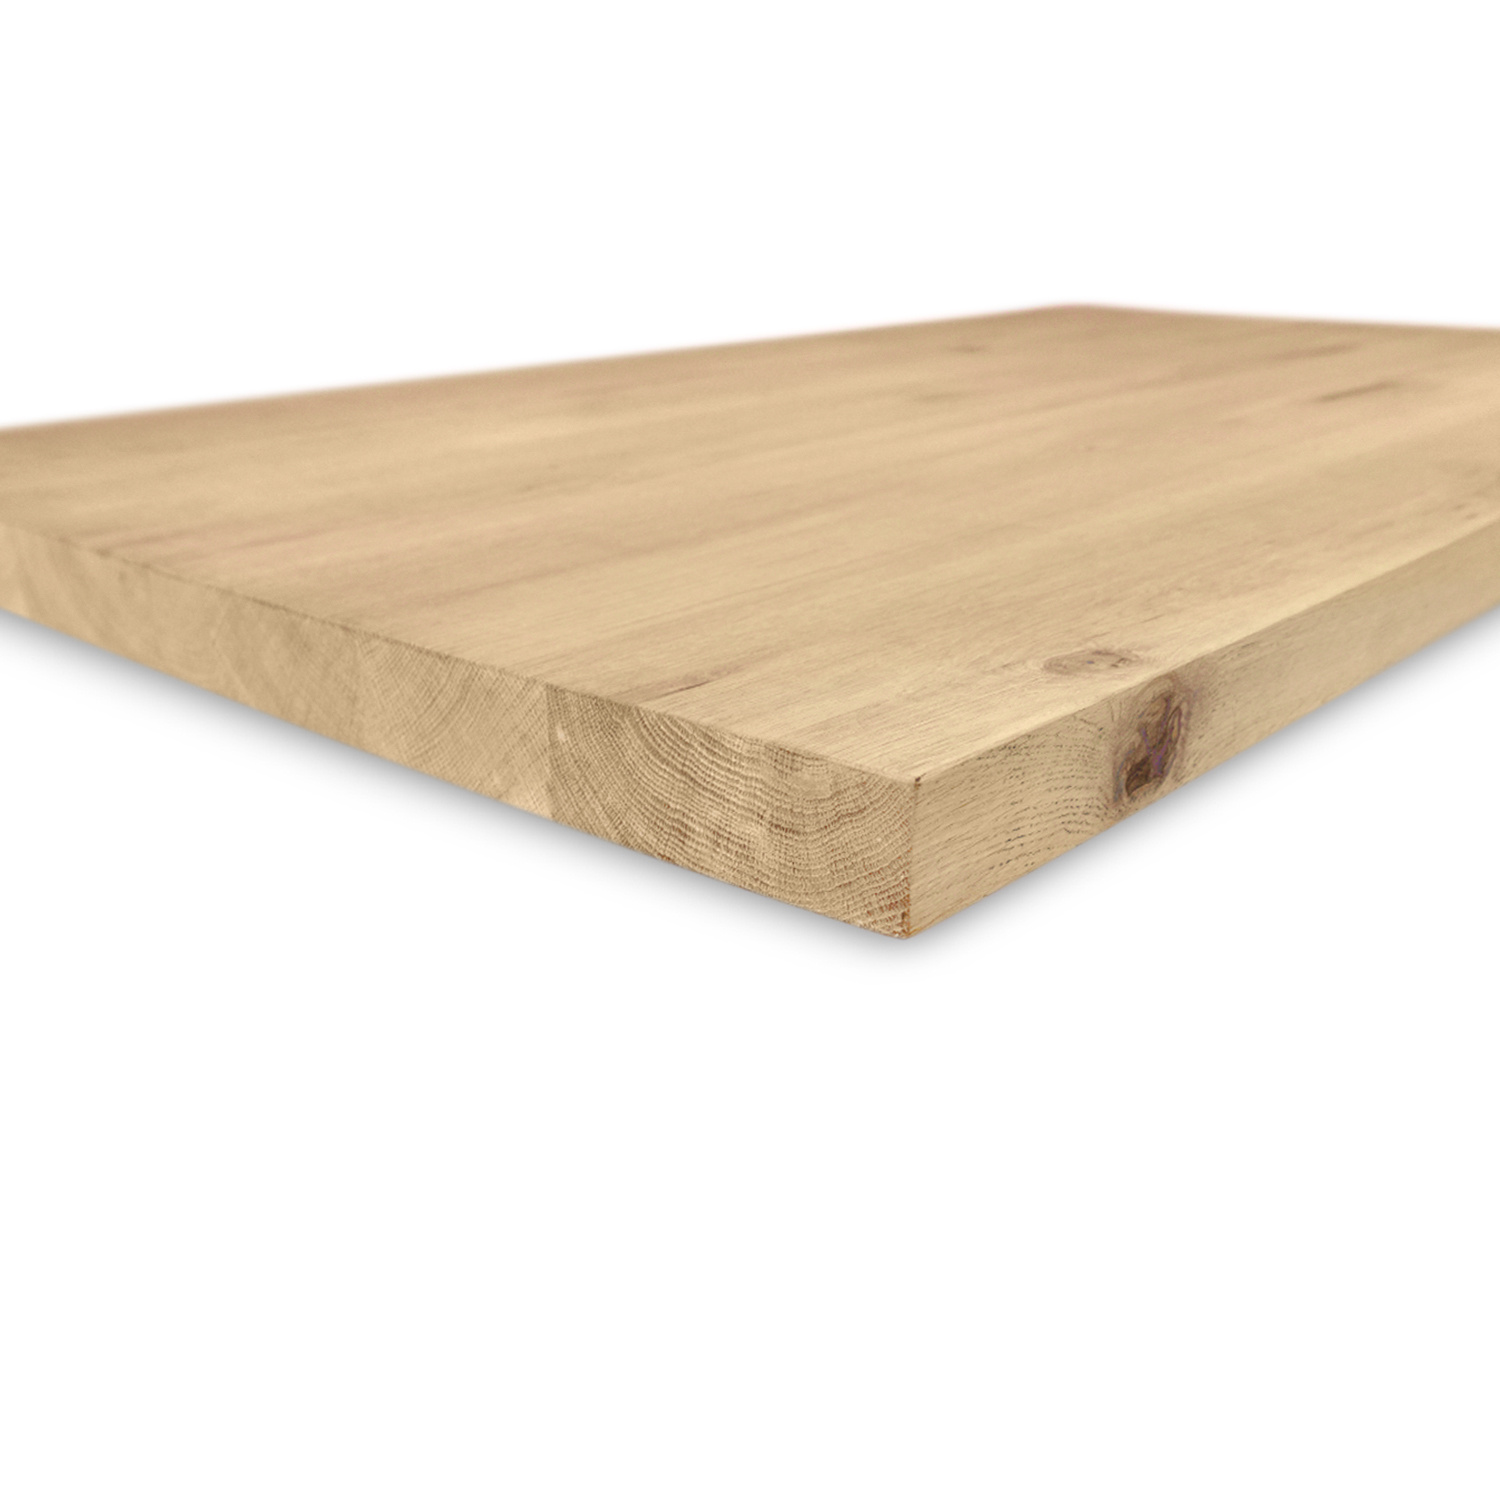  Eiken tafelblad - 4 cm dik (1-laag) - Diverse afmetingen - extra rustiek Europees eikenhout - met extra brede lamellen (circa 14-20 cm) - verlijmd kd 8-12%